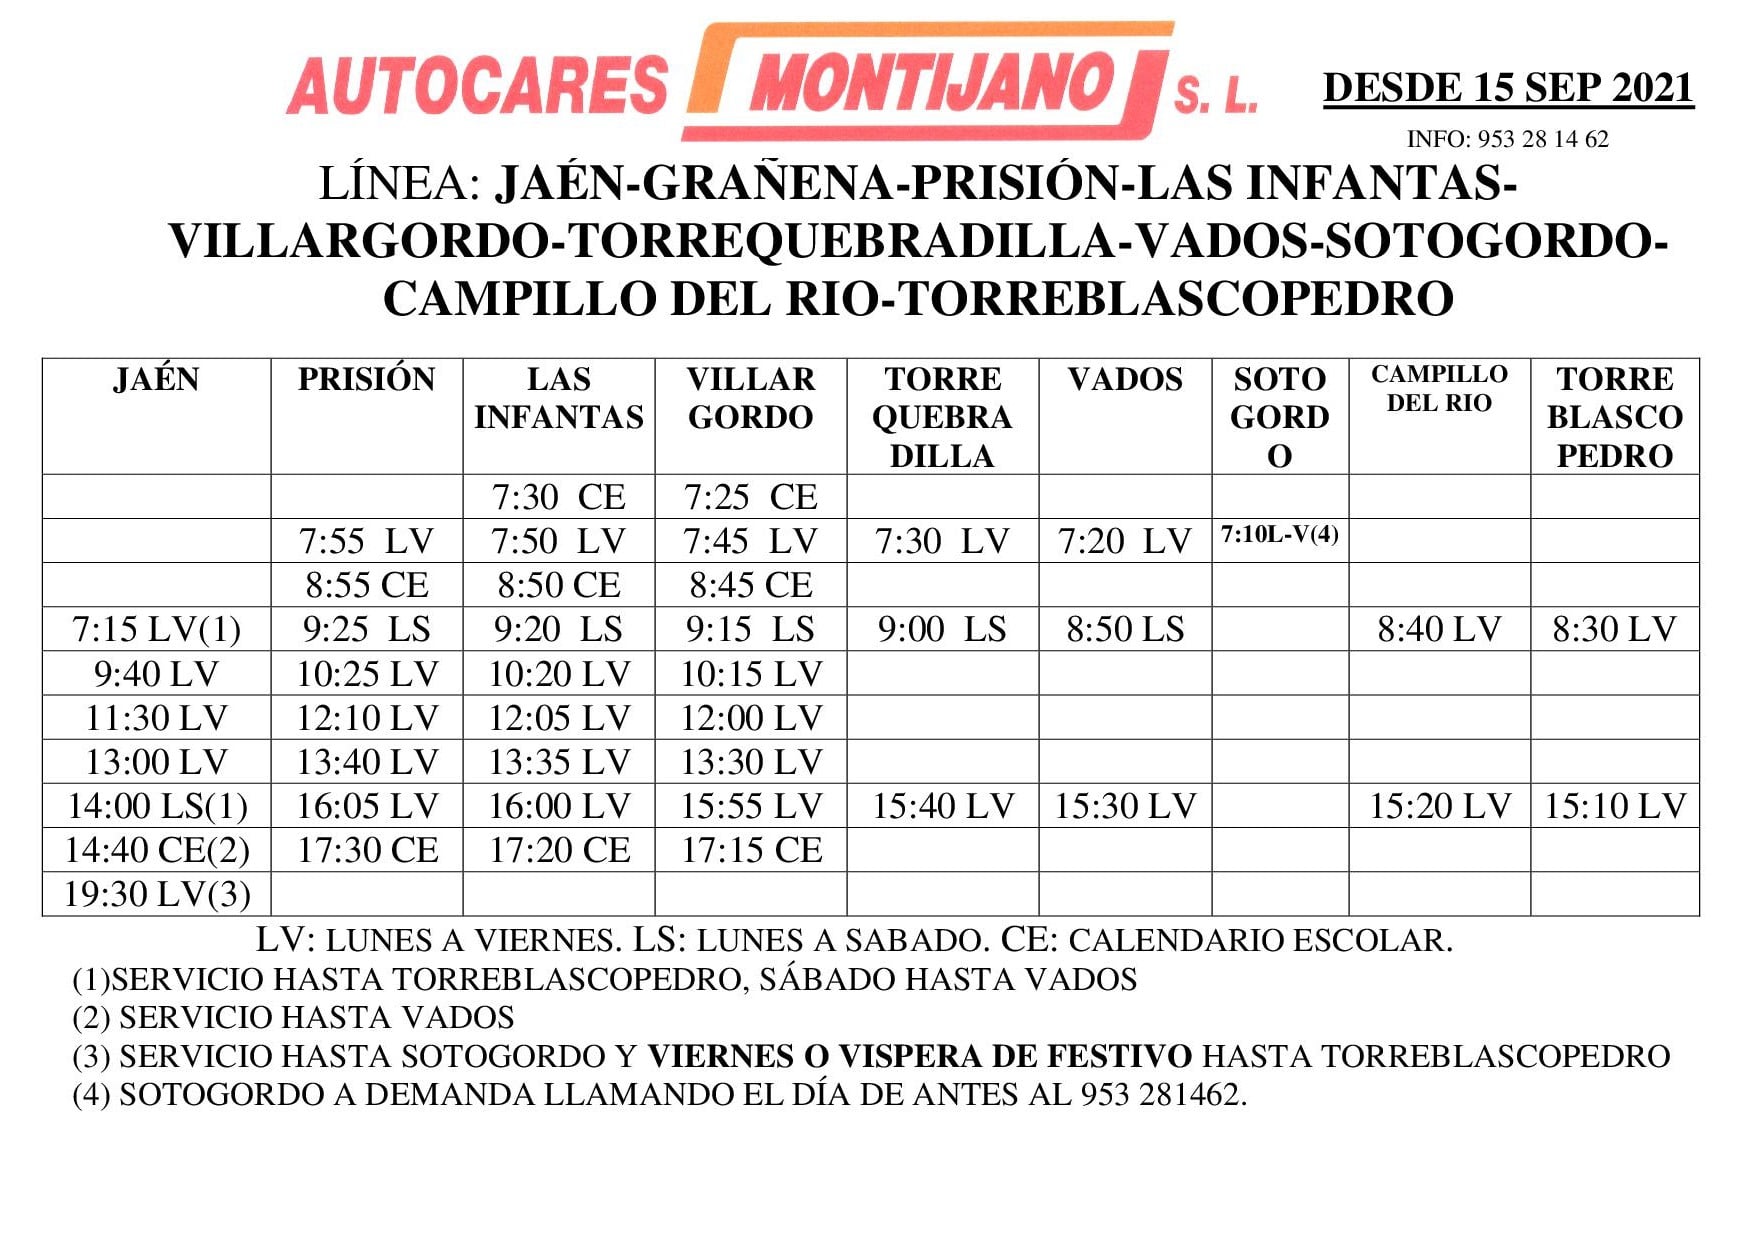 Nuevos horarios Autocares Montijano Septiembre